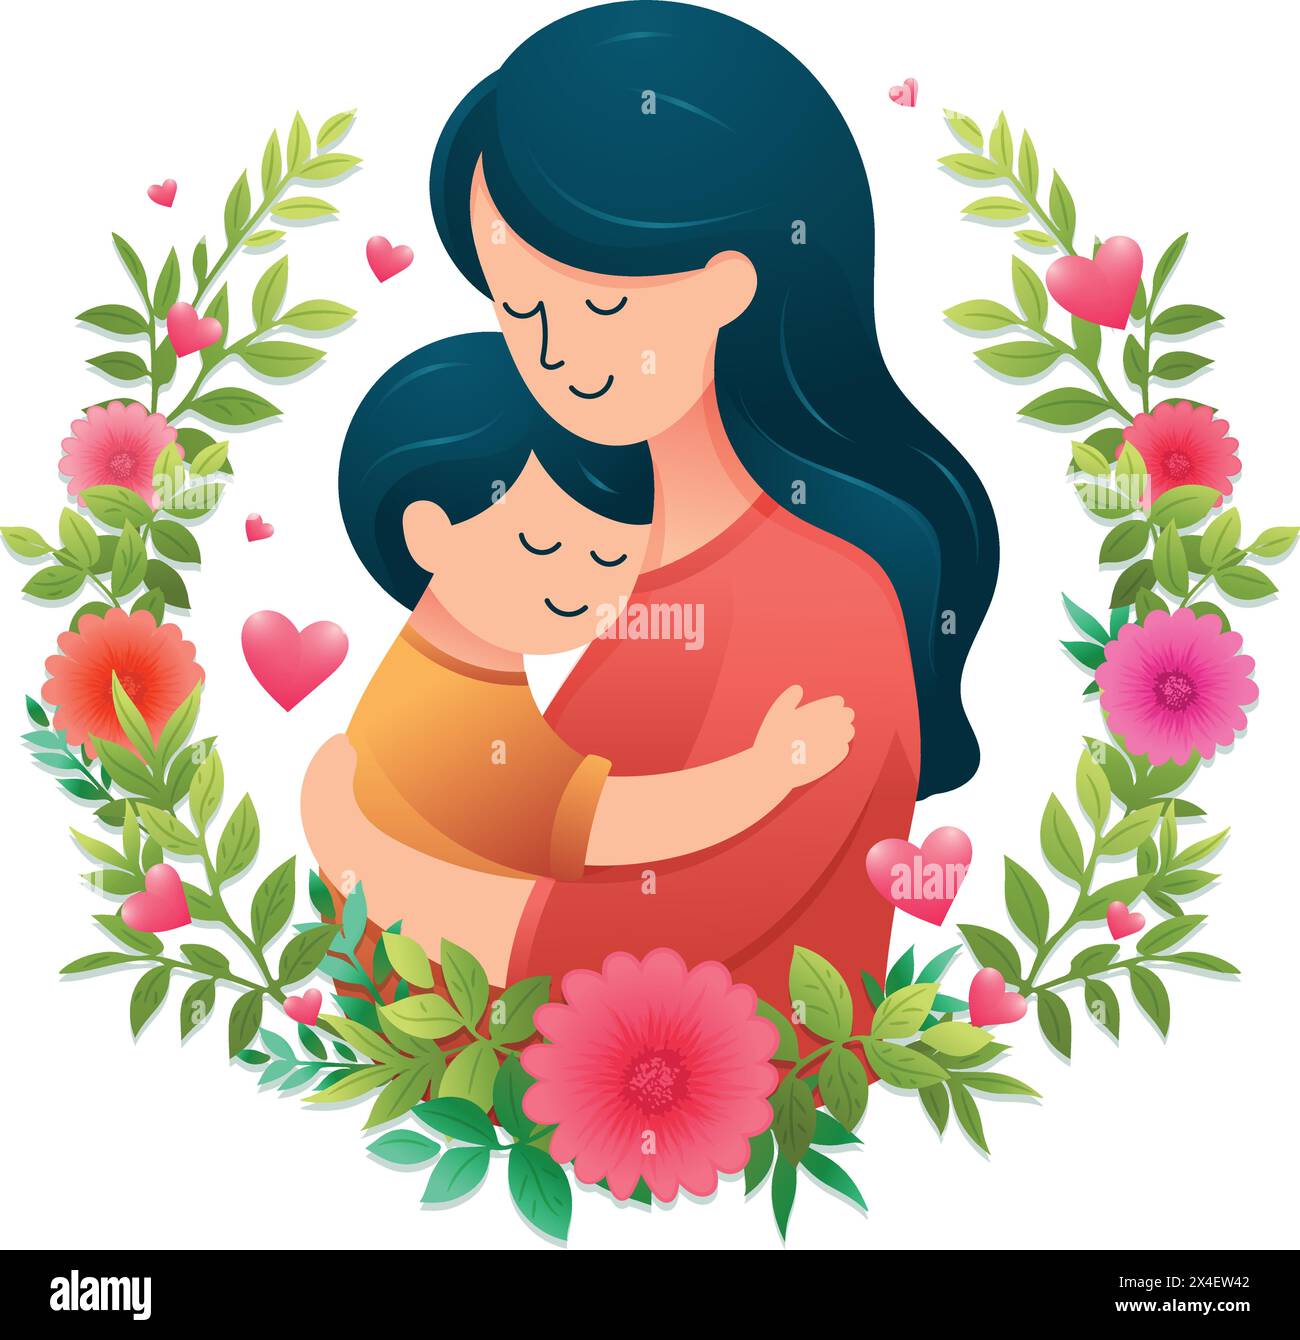 Icône ou symbole de fête des mères heureuse, maman heureuse avec fille bien-aimée illustration vectorielle plate simple Illustration de Vecteur